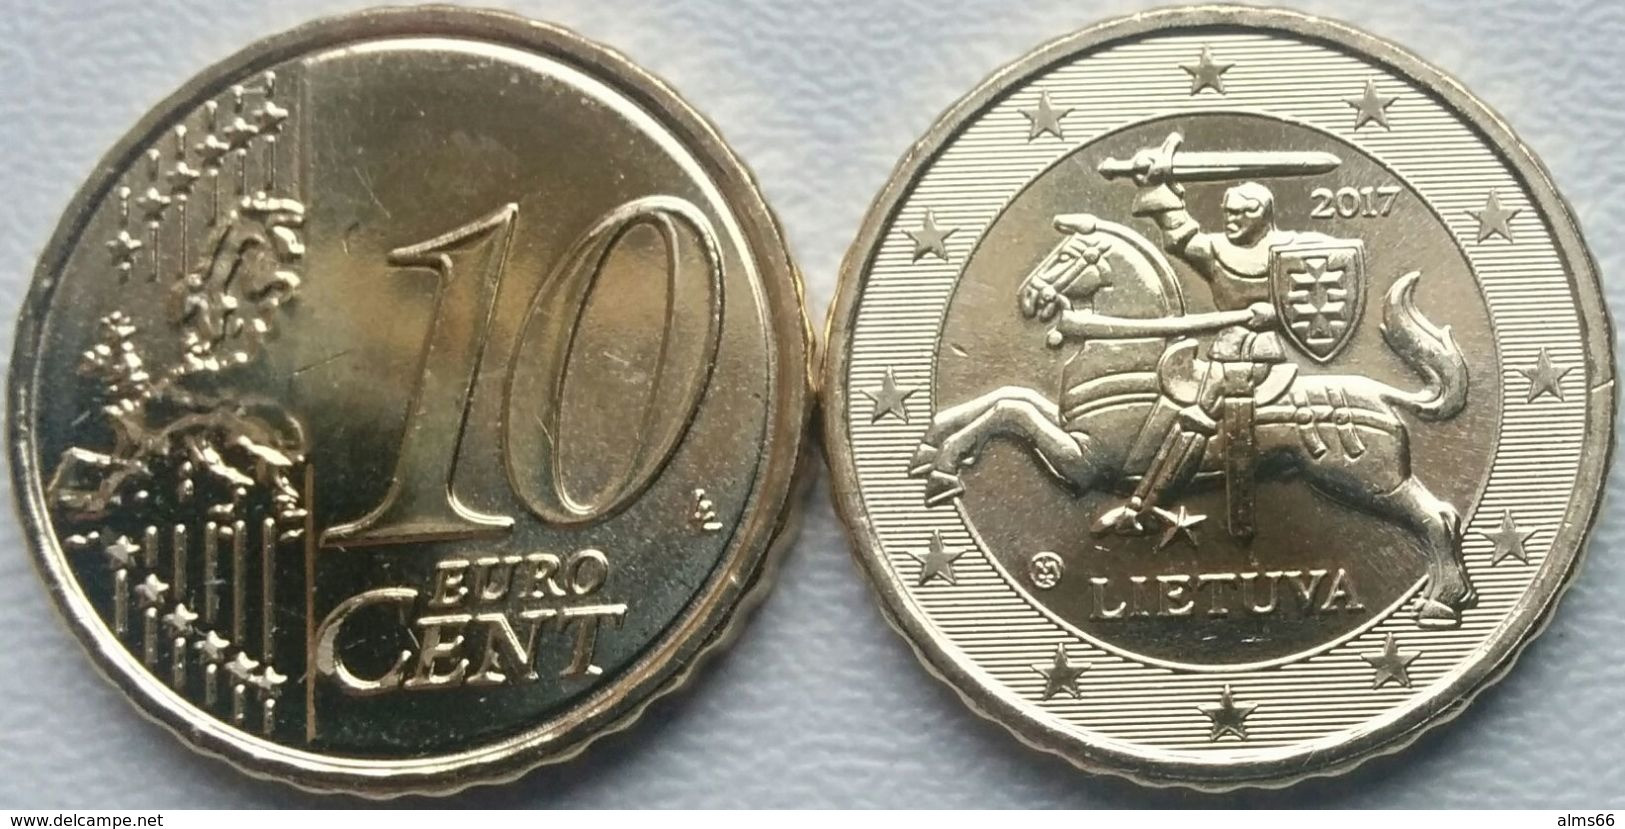 EuroCoins < Lithuania > 10 Cents 2017 UNC - Litauen